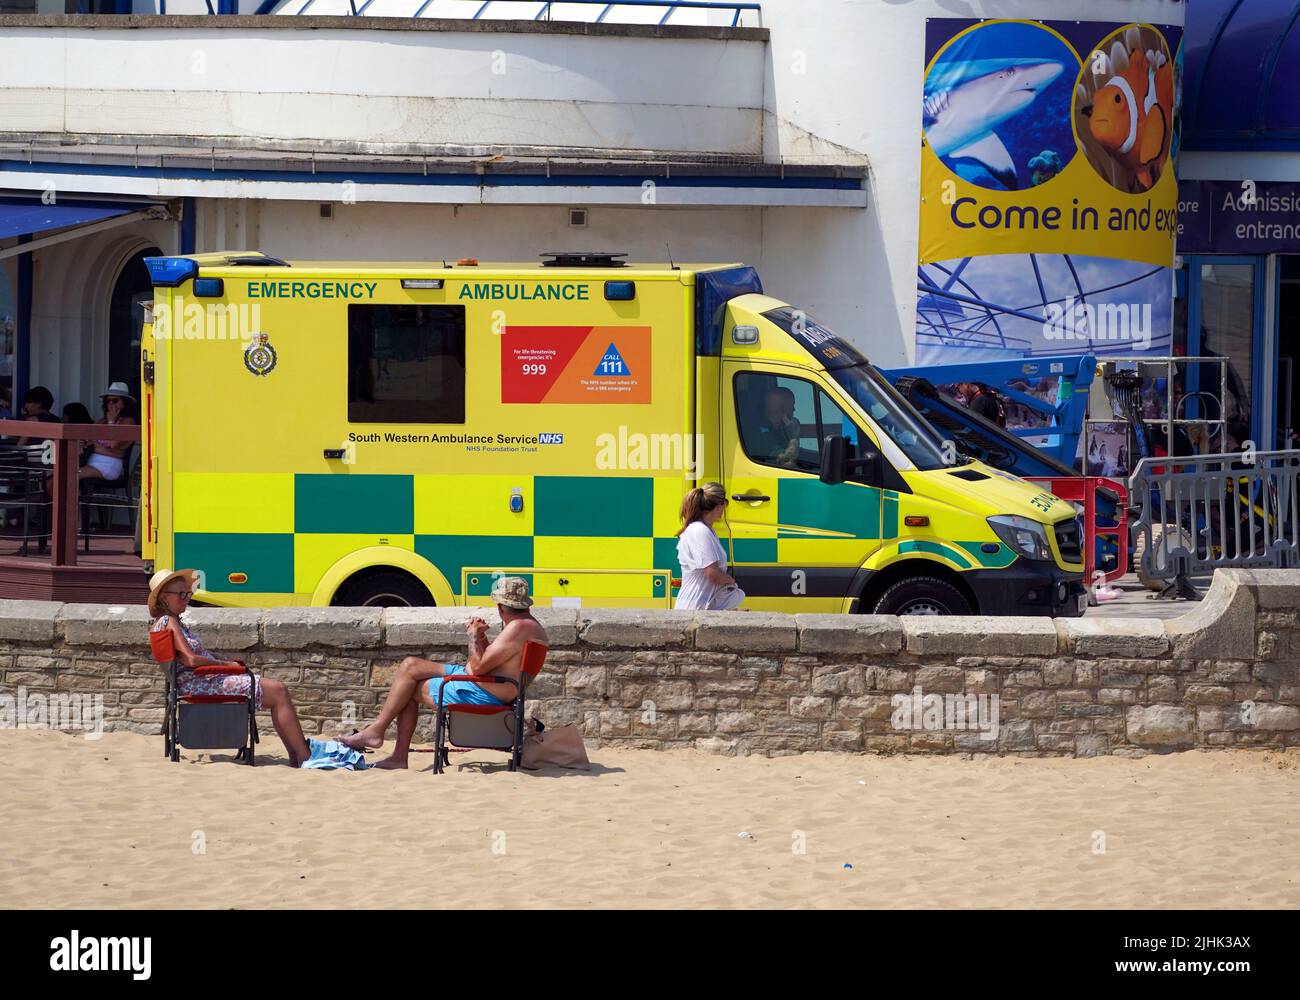 Une ambulance longe la promenade de Bournemouth. Les Britanniques sont sur le point de fondre le jour le plus chaud jamais enregistré au Royaume-Uni alors que les températures devraient atteindre 40C. Date de la photo: Mardi 19 juillet 2022. Banque D'Images